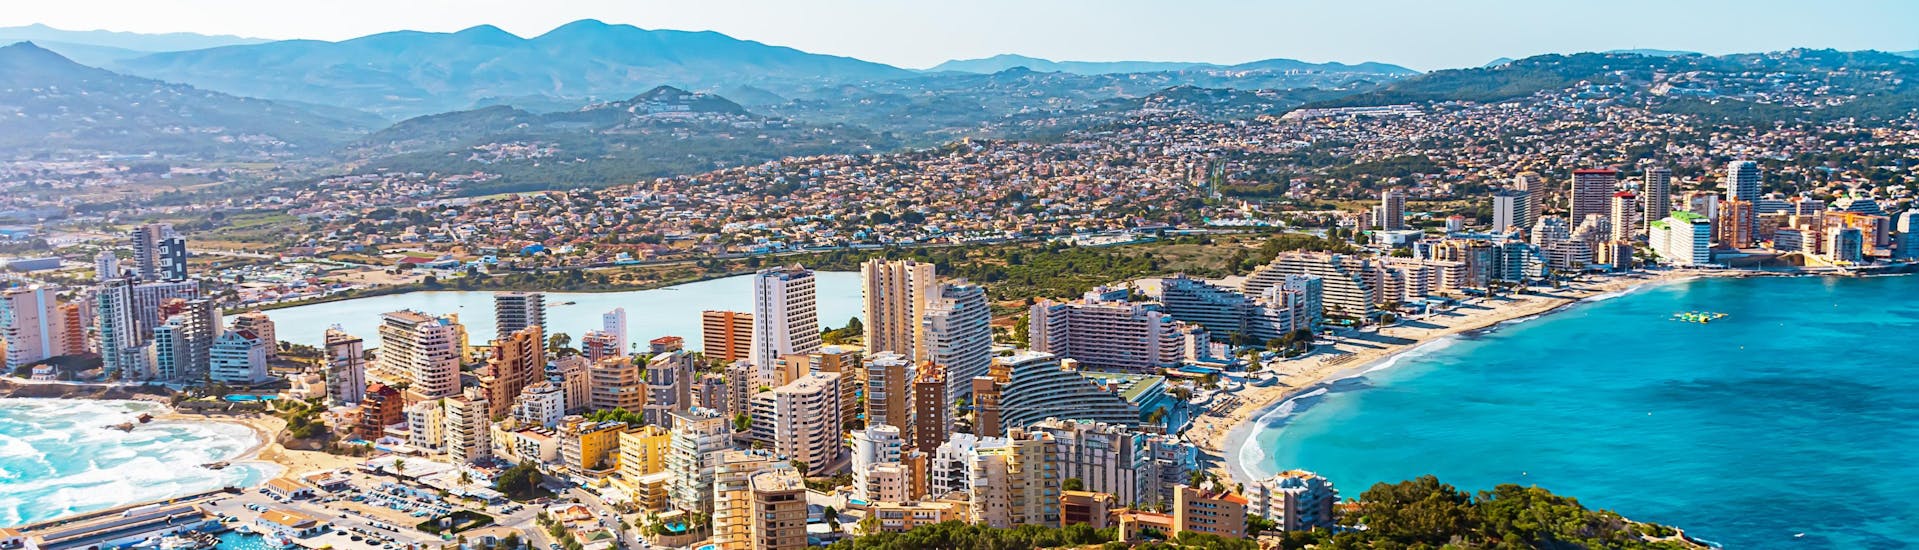 Vista aérea de la costa y el pueblo de Calpe en Alicante.